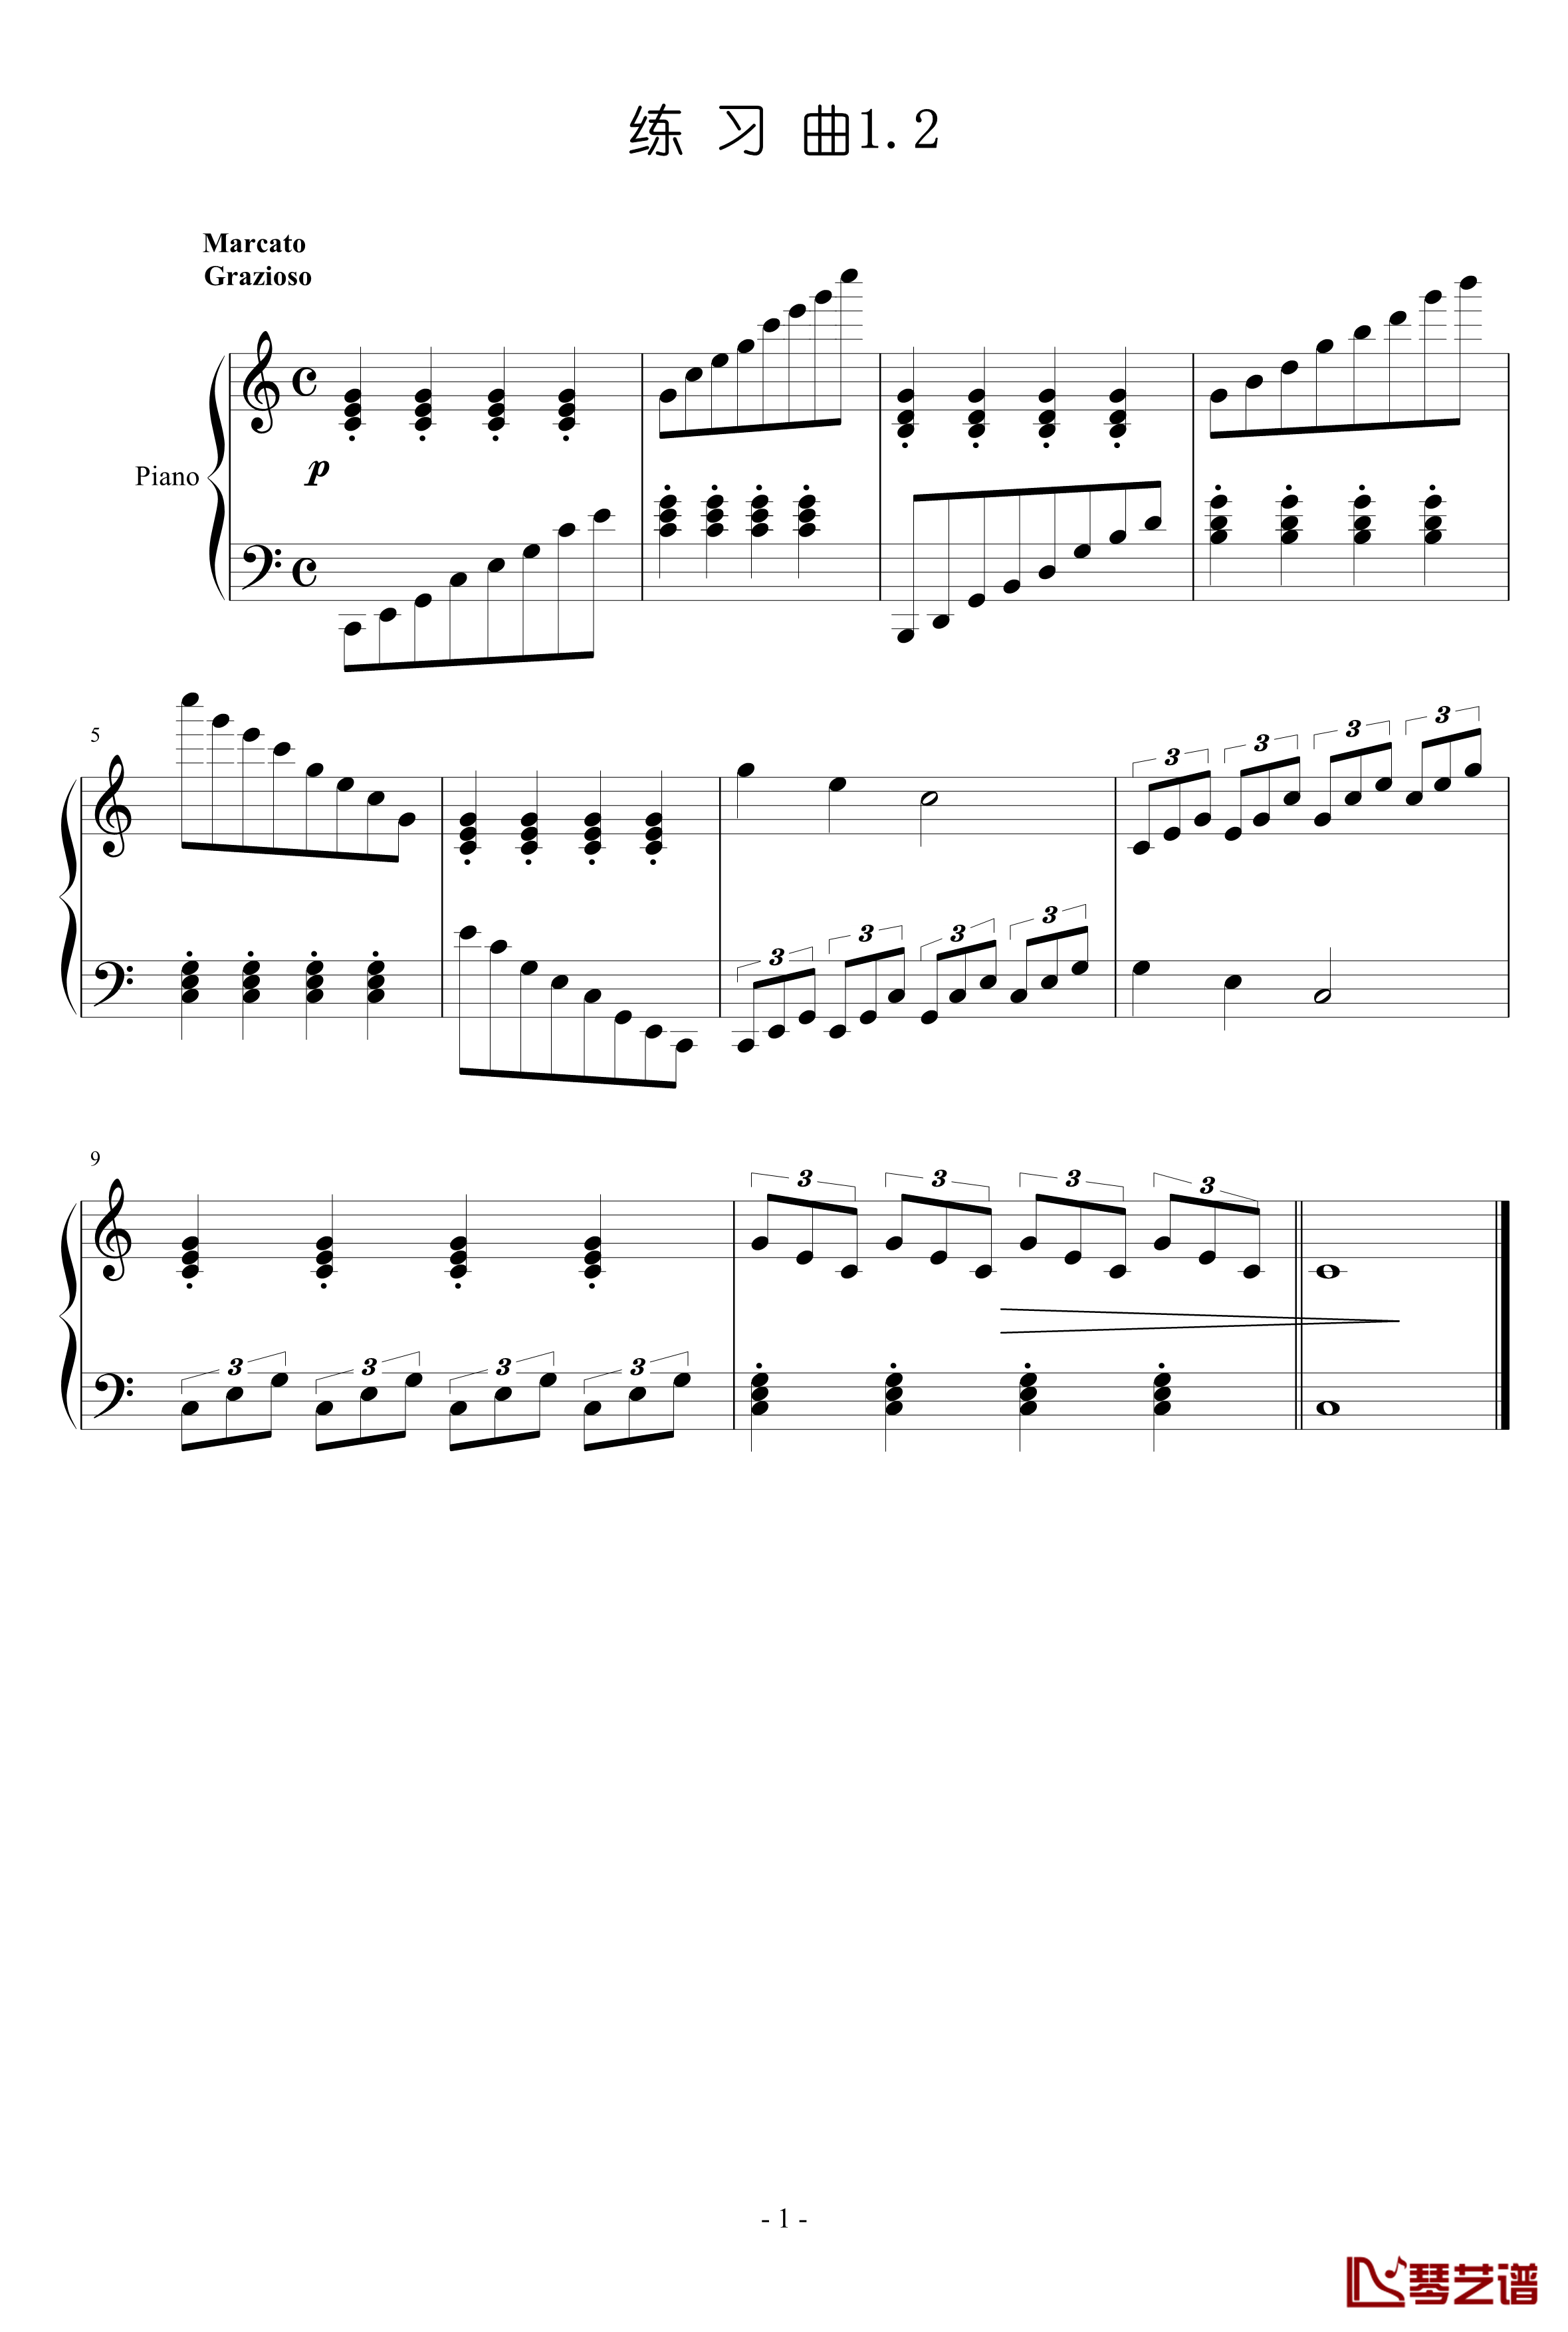 练习曲钢琴谱-gzf1351